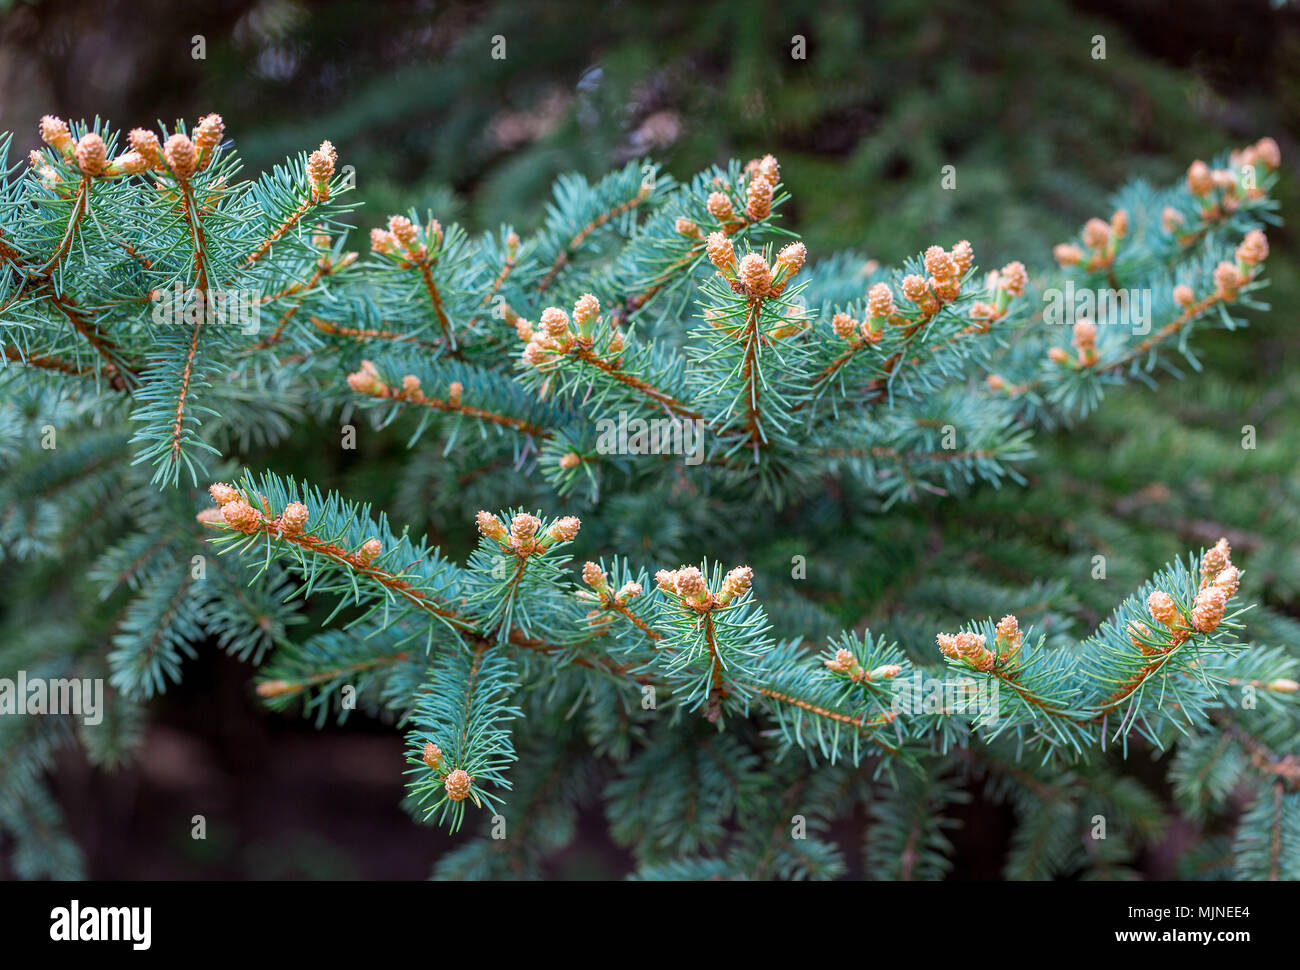 Blue l'épinette du Colorado, Picea pungens, branches avec de nouveaux bourgeons au printemps. Jeunes aiguilles apparaissent. Beau fond naturel. Selective focus Banque D'Images